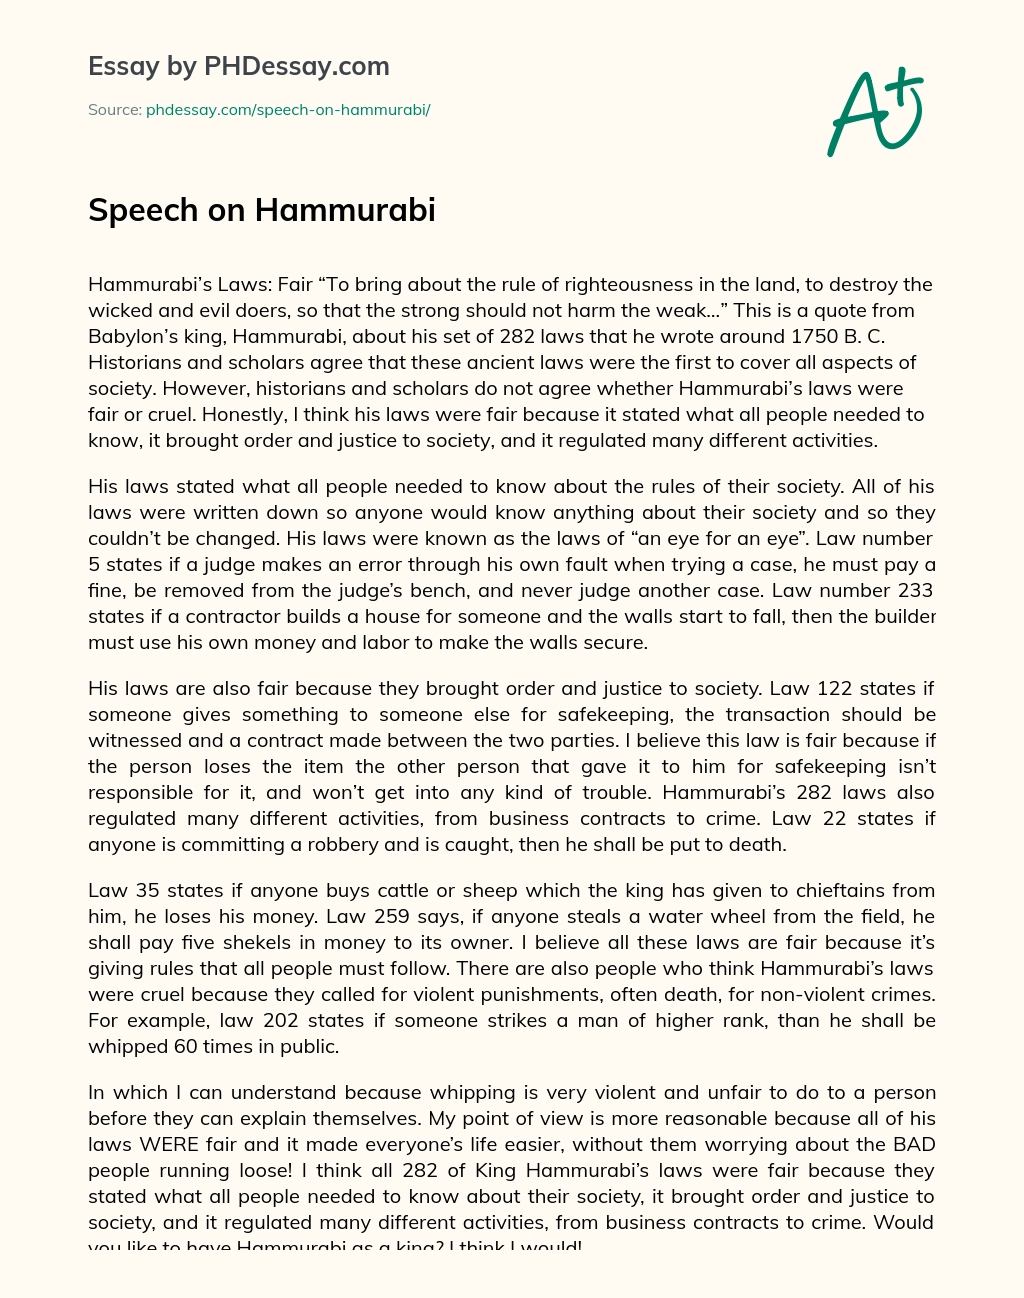 Speech on Hammurabi essay